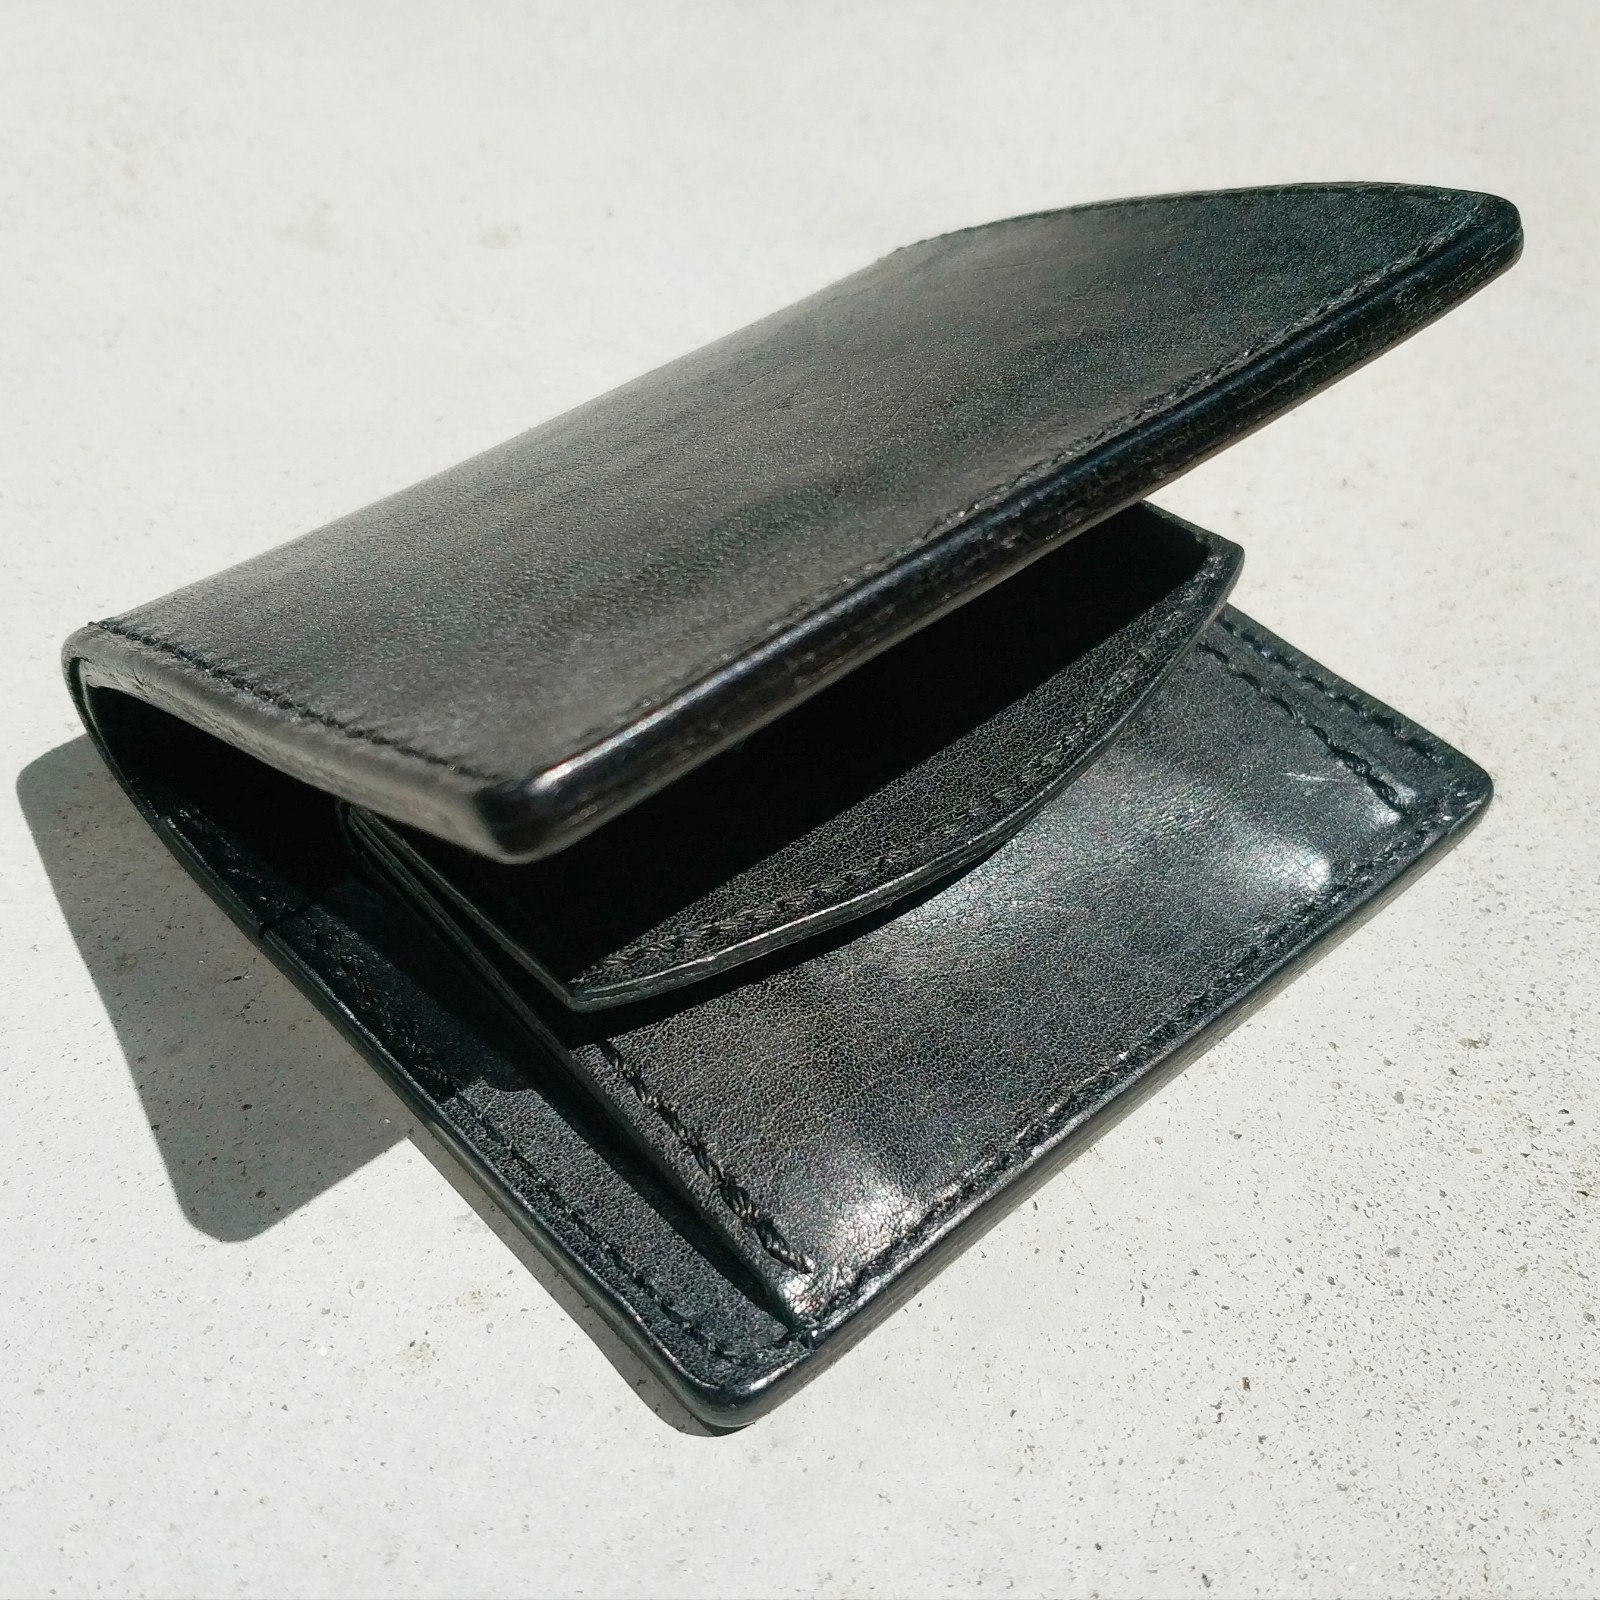 レザークラフト】初めて作る二つ折り財布。フリーの型紙を使ってみる。完成編 | mungikiblog